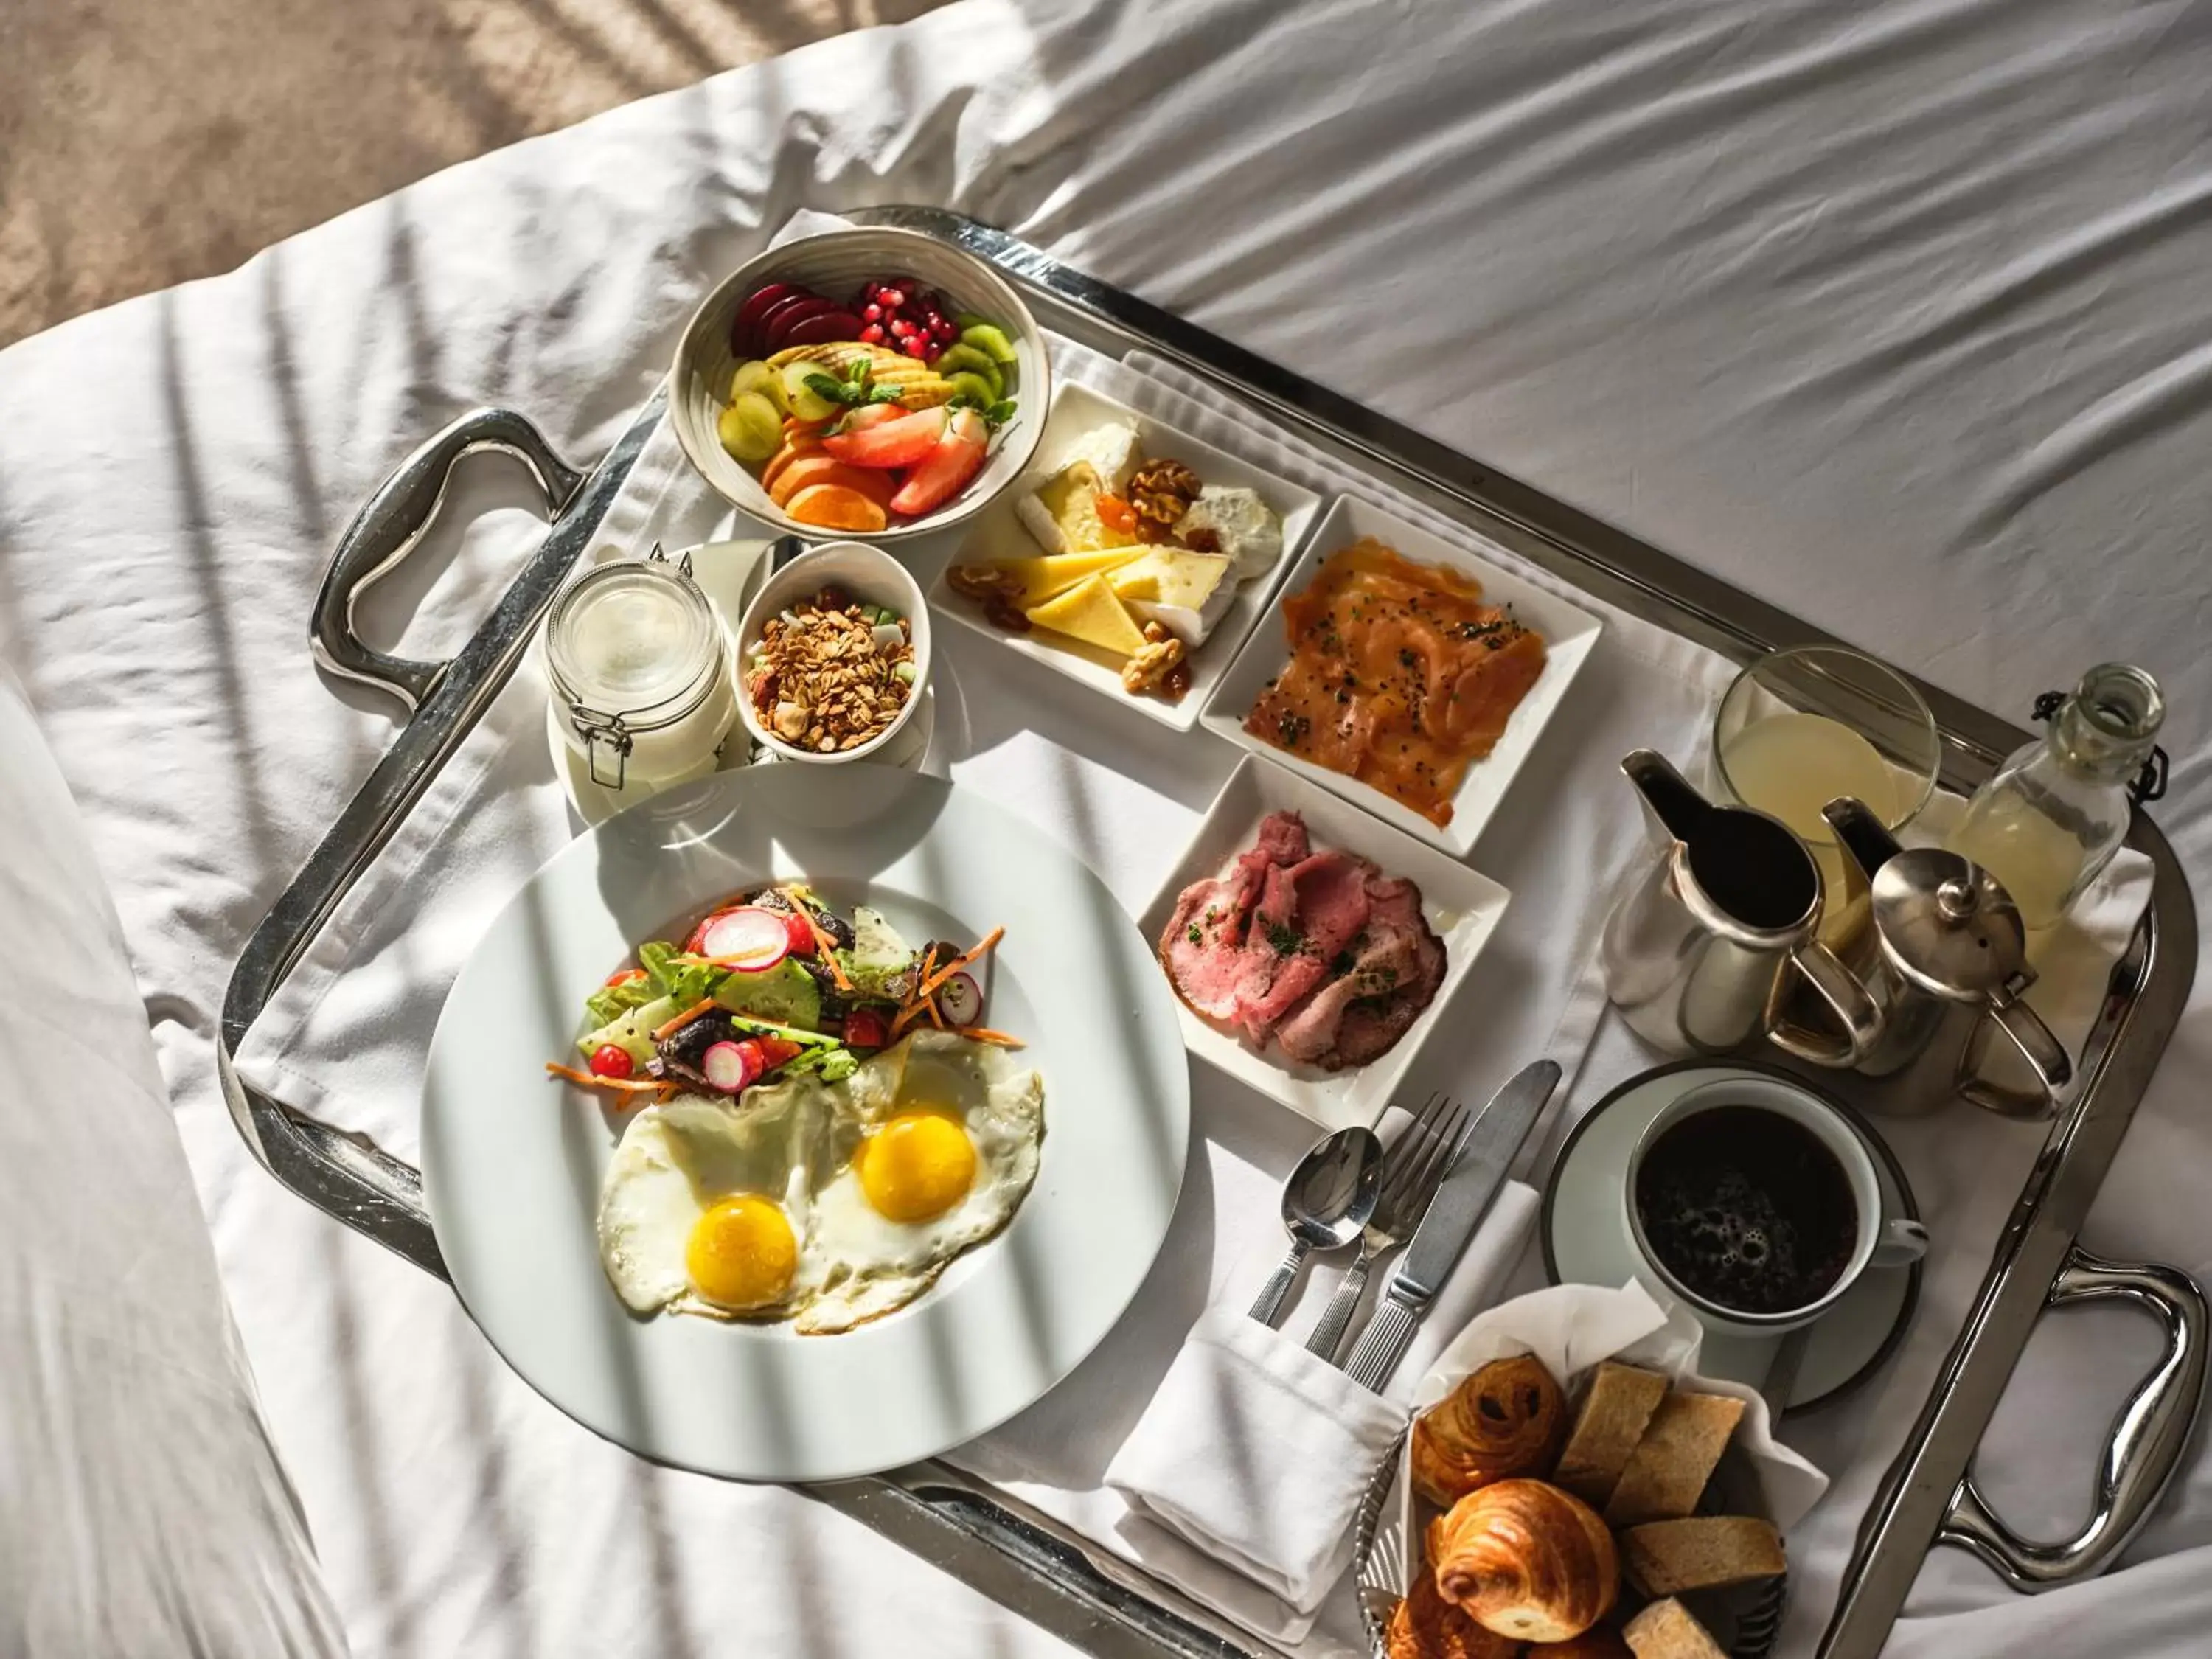 Breakfast in Hôtel particulier Le DOGE - Relais & Châteaux